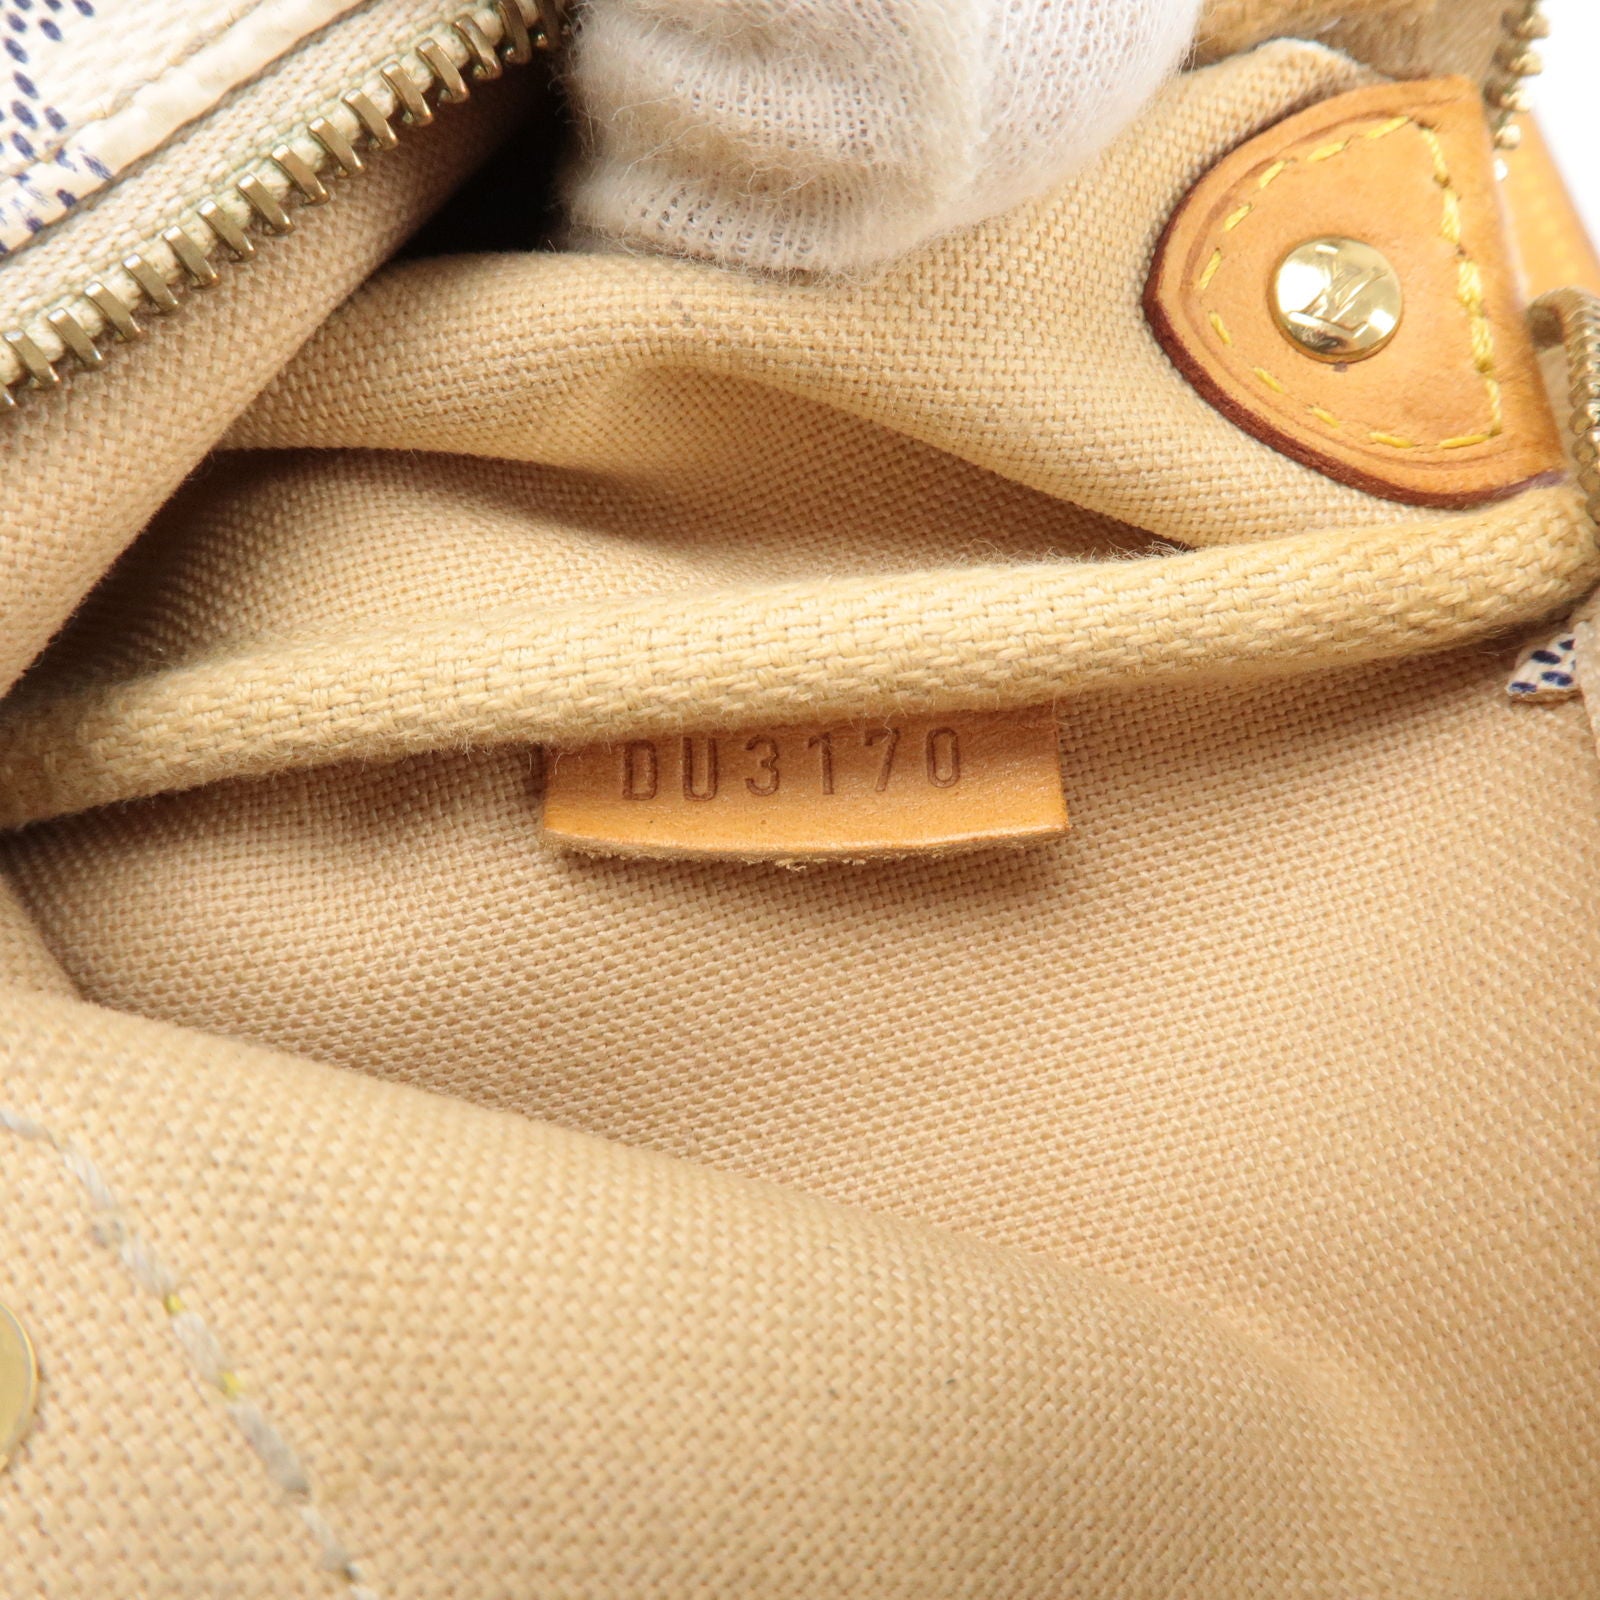 Louis Vuitton Damier Azur Eva Shoulder Bag 2way N55214 Lv Auction